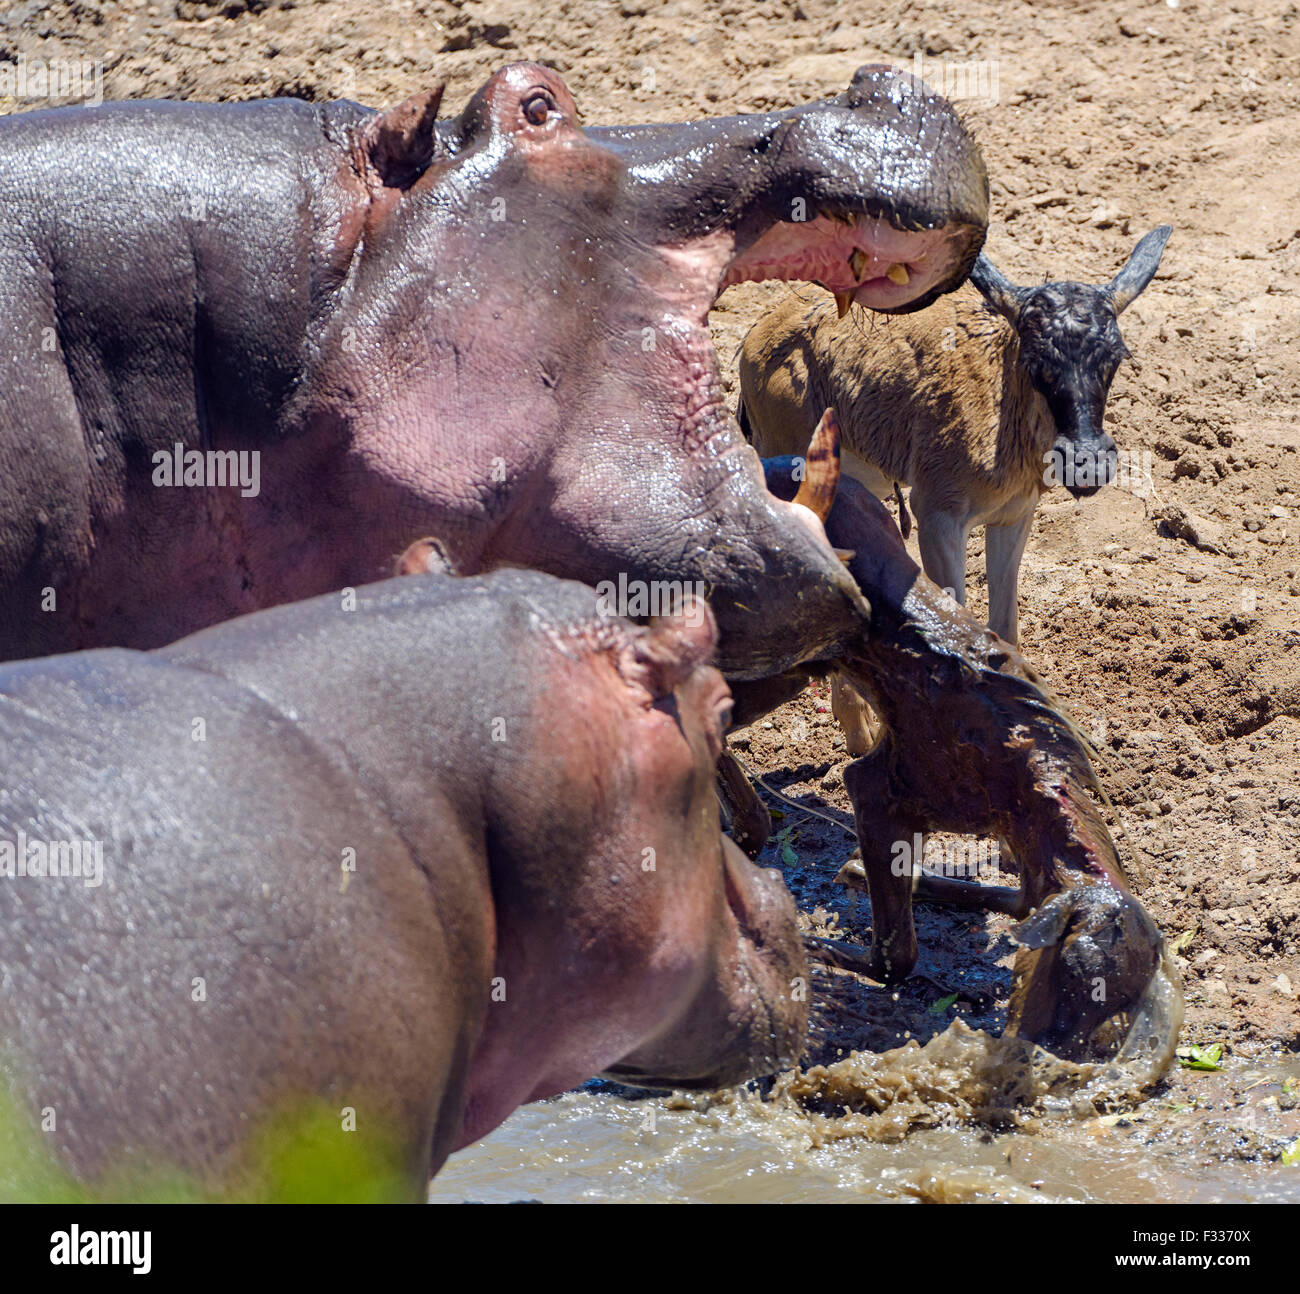 Los hipopótamos (Hippopotamus amphibious) caza y muerte de los ñus en la pantorrilla, comportamiento inusual, rareza, Reserva Nacional Maasai Mara Foto de stock